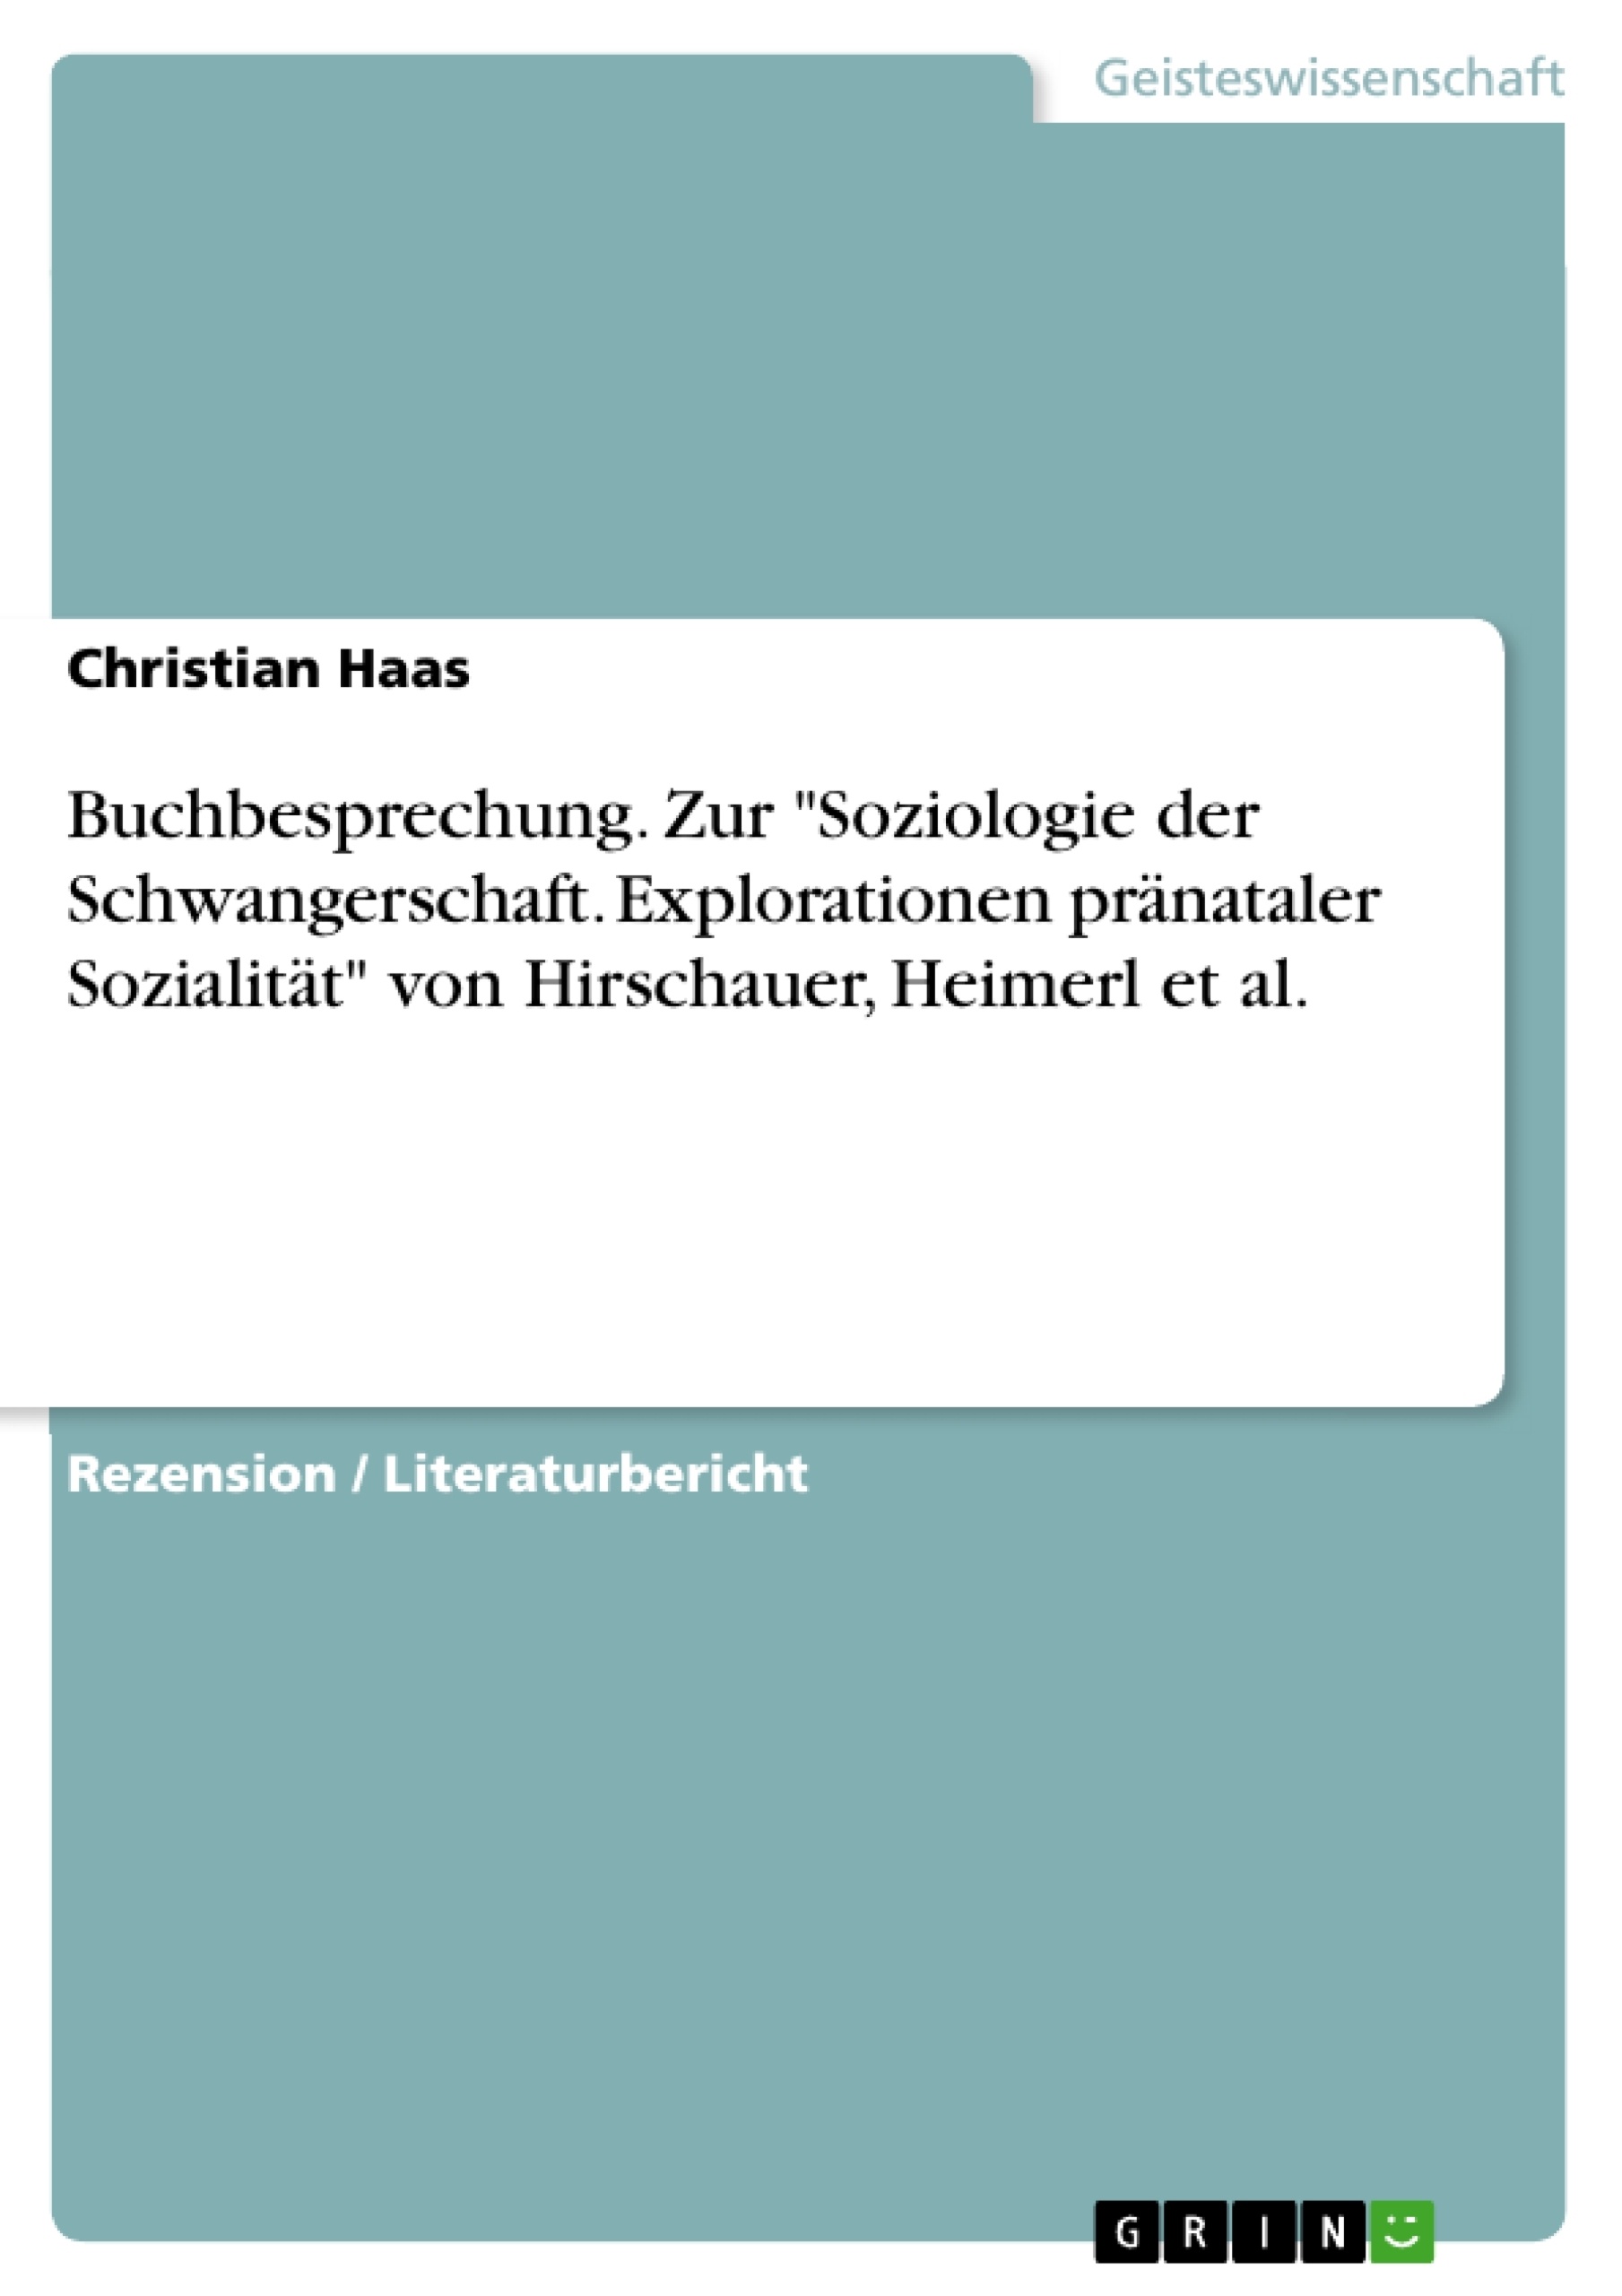 Title: Buchbesprechung. Zur "Soziologie der Schwangerschaft. Explorationen pränataler Sozialität" von Hirschauer, Heimerl et al.